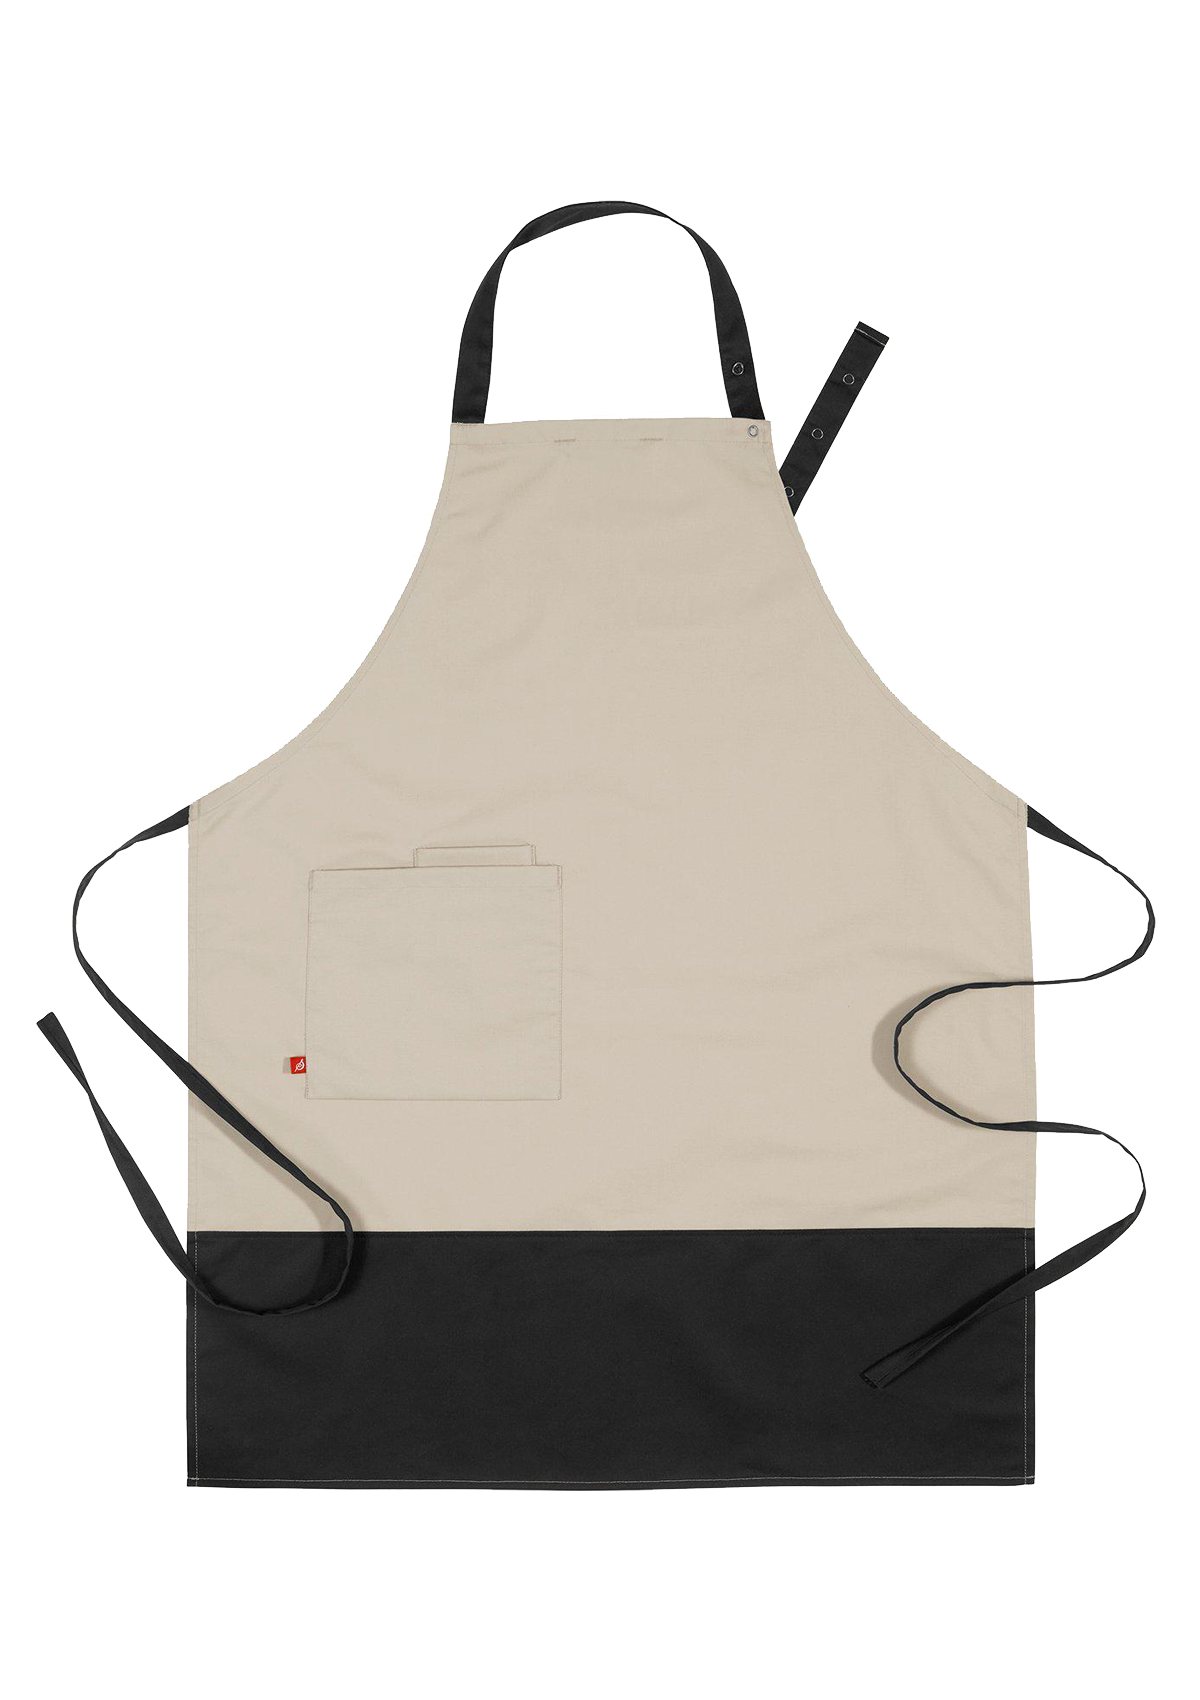 Block-Printed Bib apron